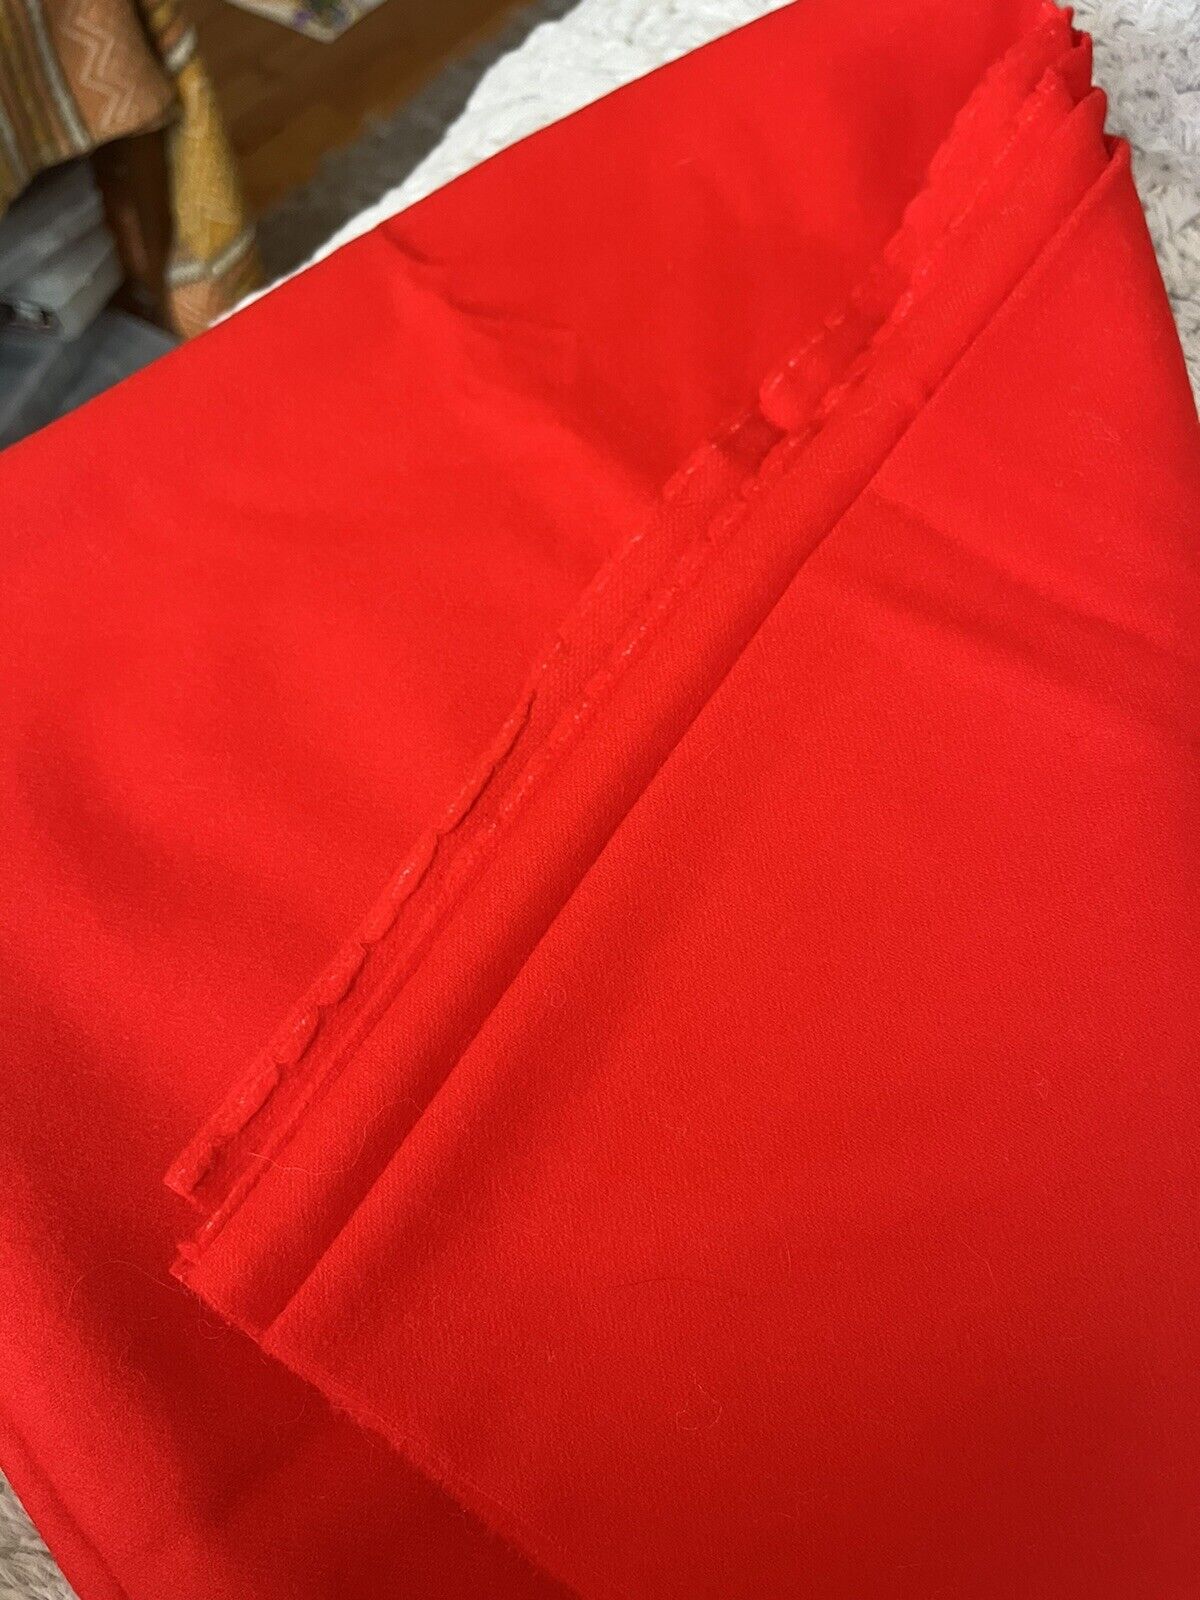 Vintage Red Wool Material 33”x 60”